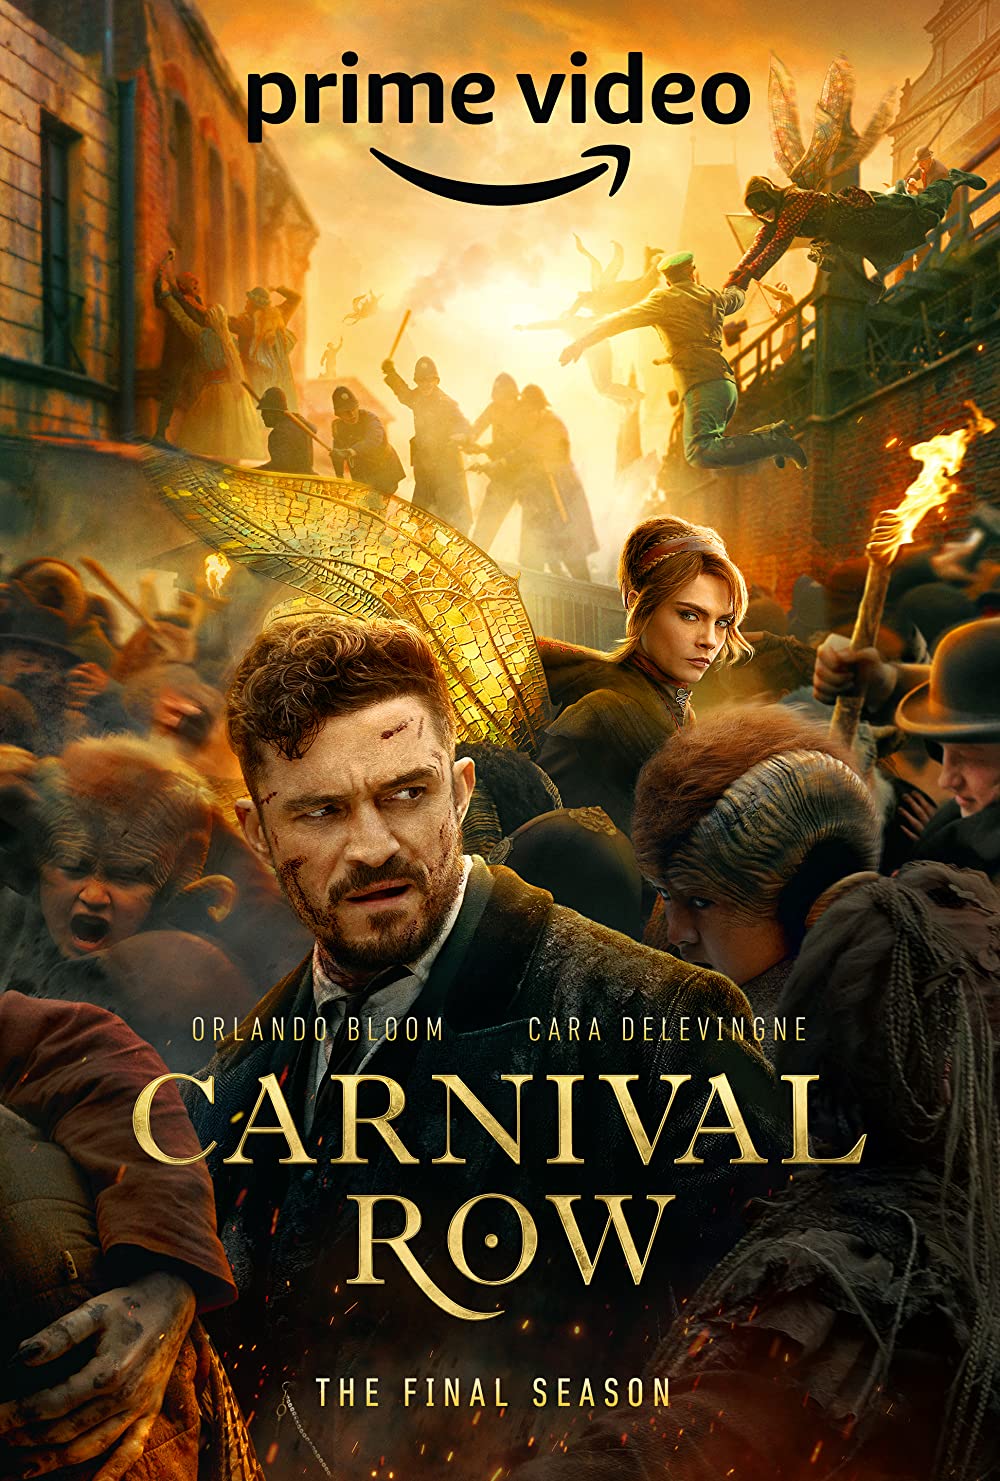 ดูหนังออนไลน์ฟรี Carnival Row คาร์นิวัล โรว์ Season 1-2 (จบ) หนังเต็มเรื่อง หนังมาสเตอร์ ดูหนังHD ดูหนังออนไลน์ ดูหนังใหม่